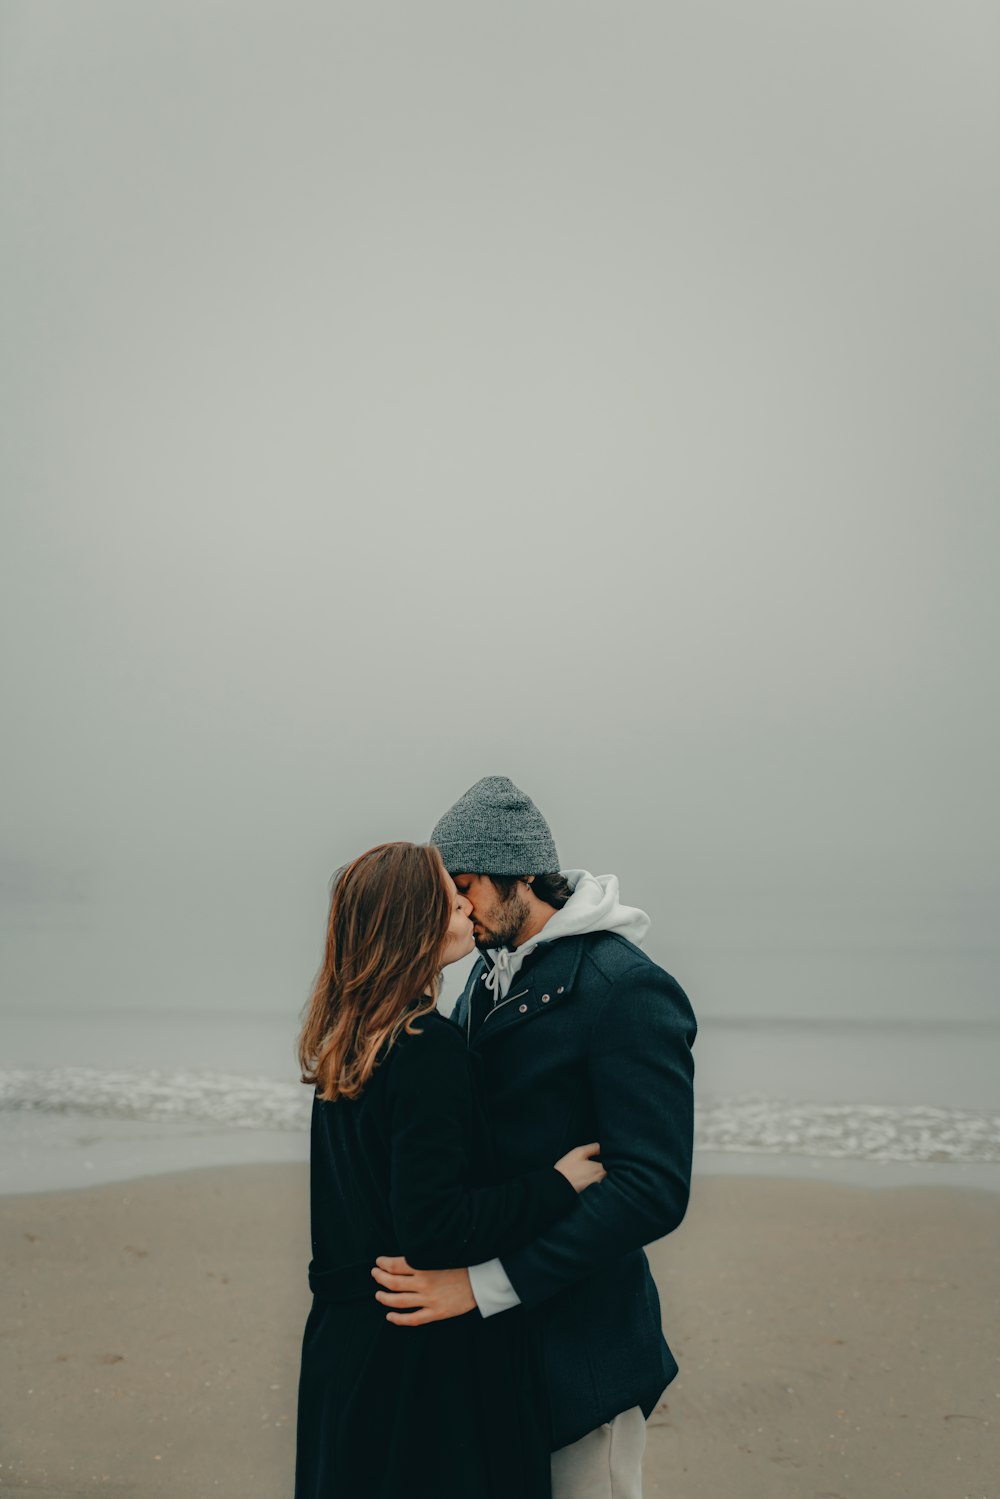 Una pareja besándose en la playa frente al océano